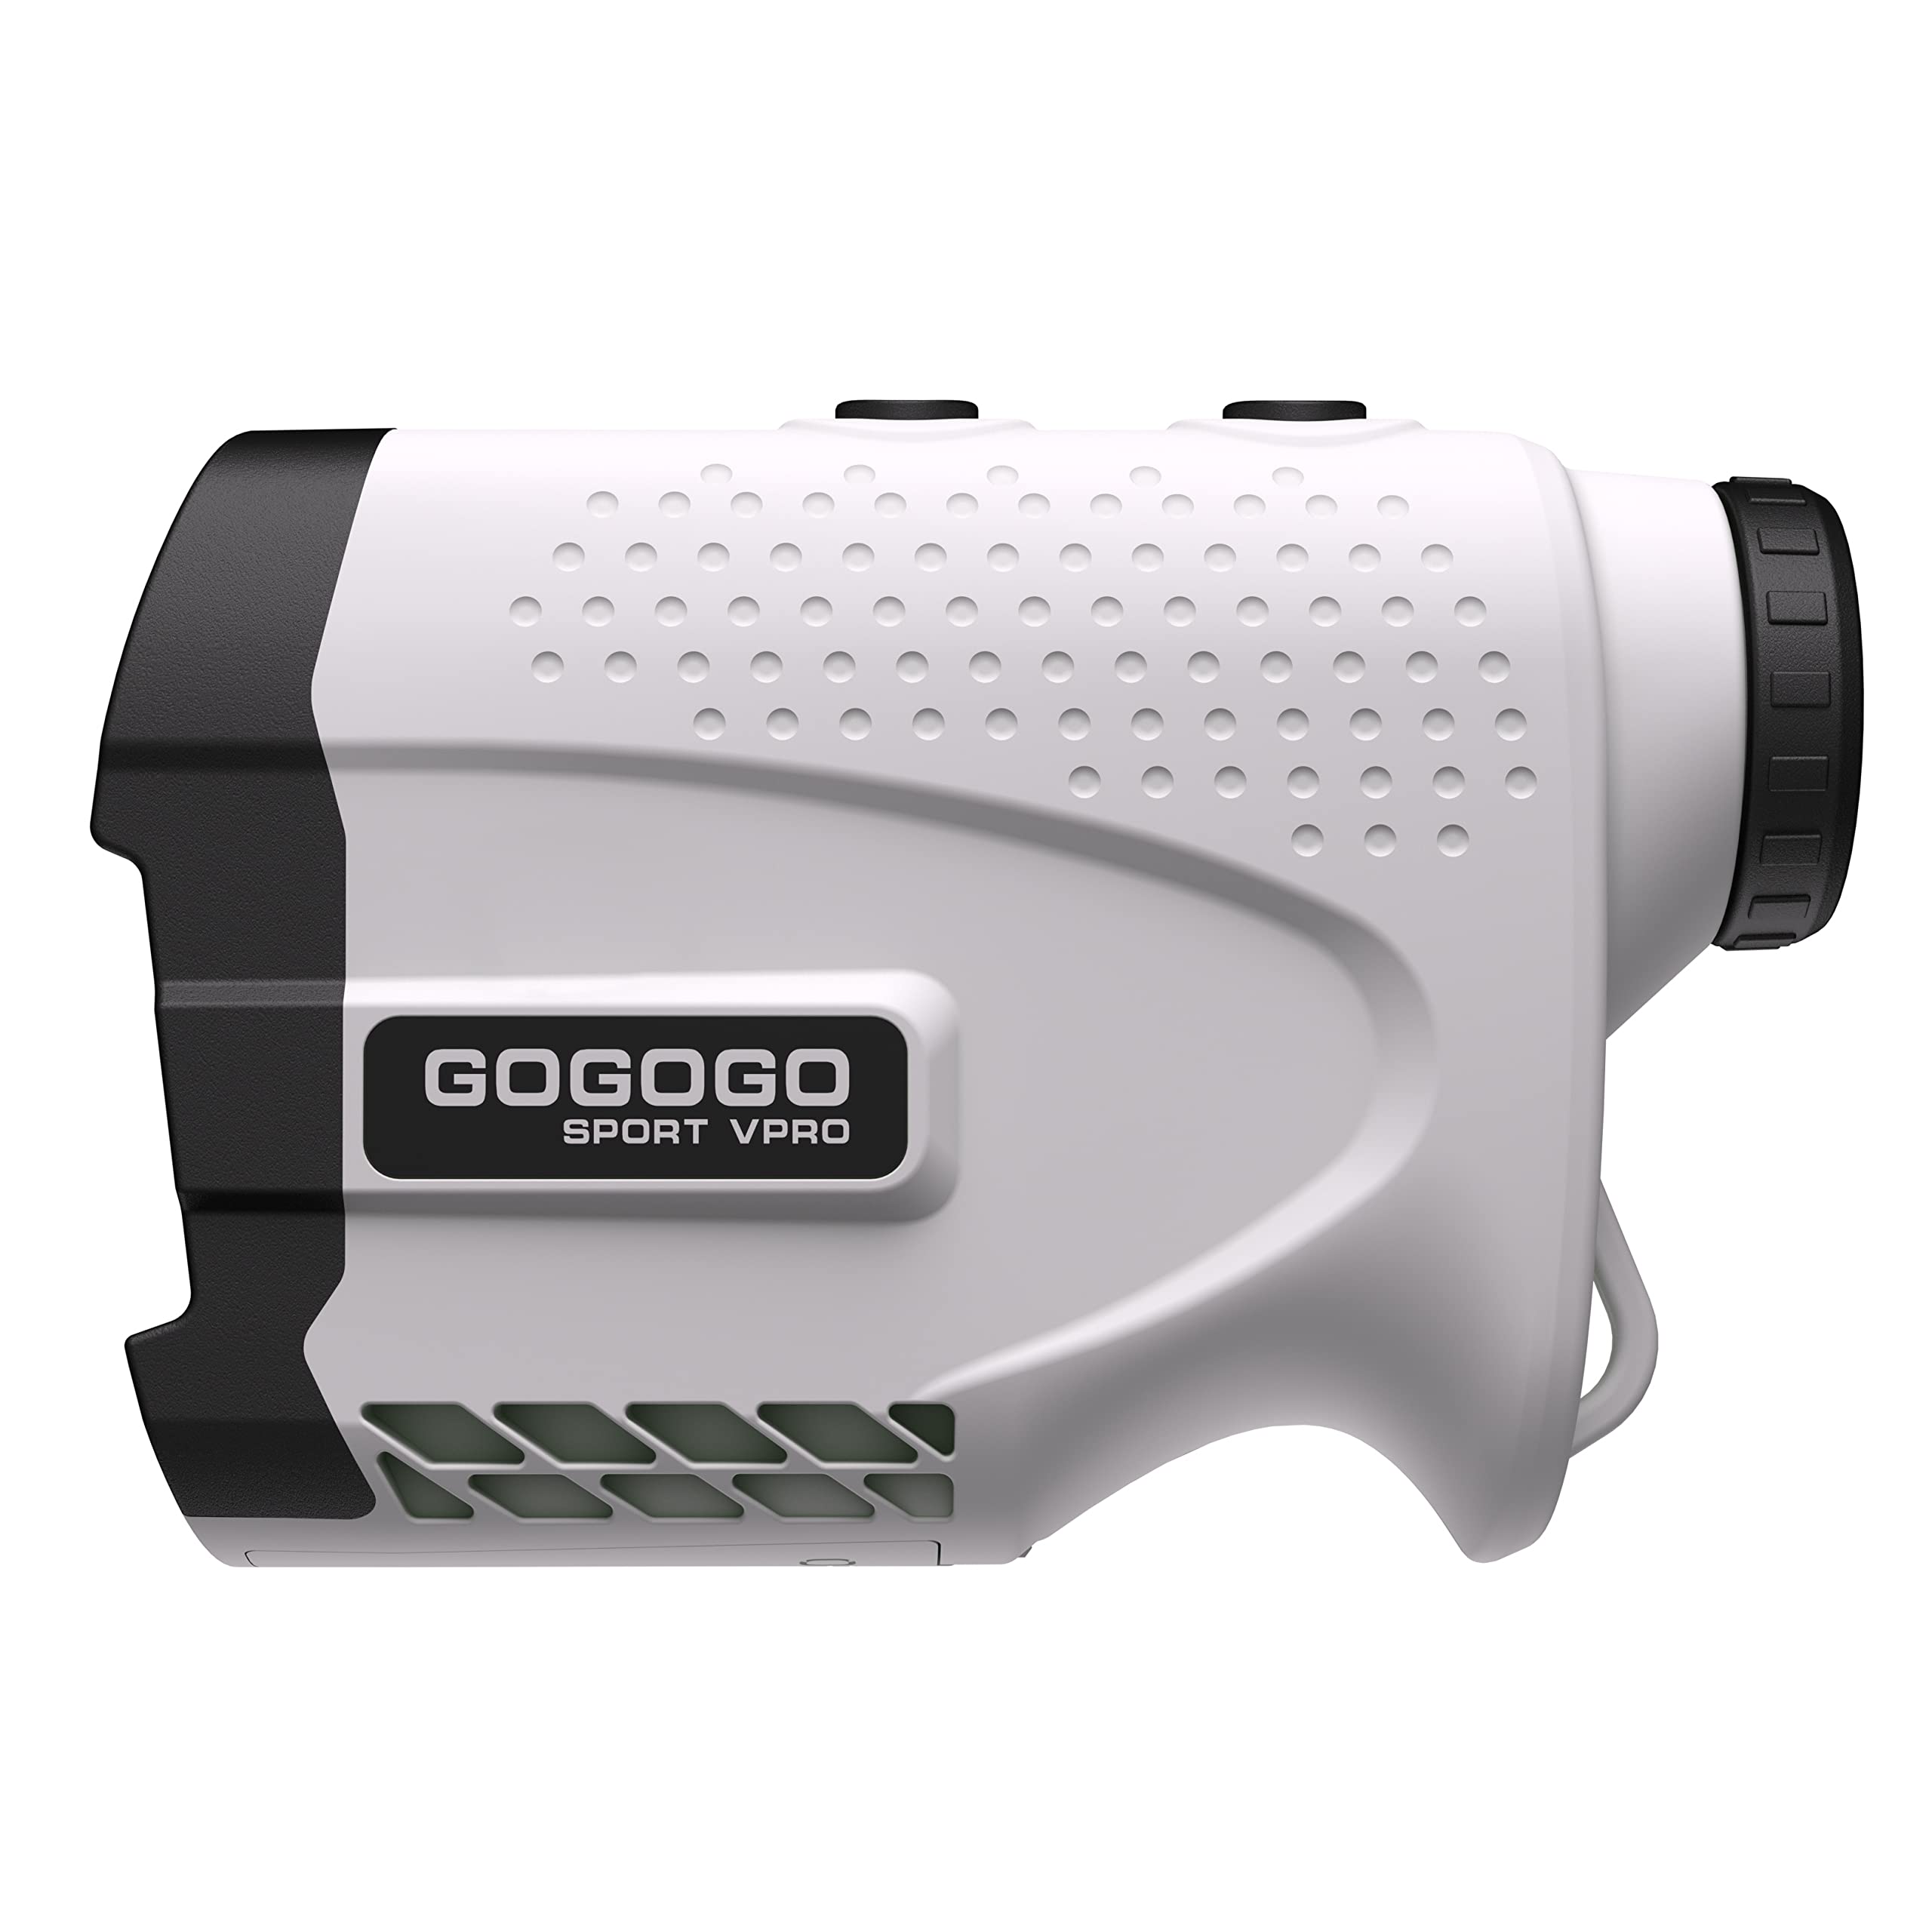  Gogogo Sport Vpro Лазерный дальномер для гольфа и охоты Дальномер Измерение расстояния с высокоточной фиксацией фл...